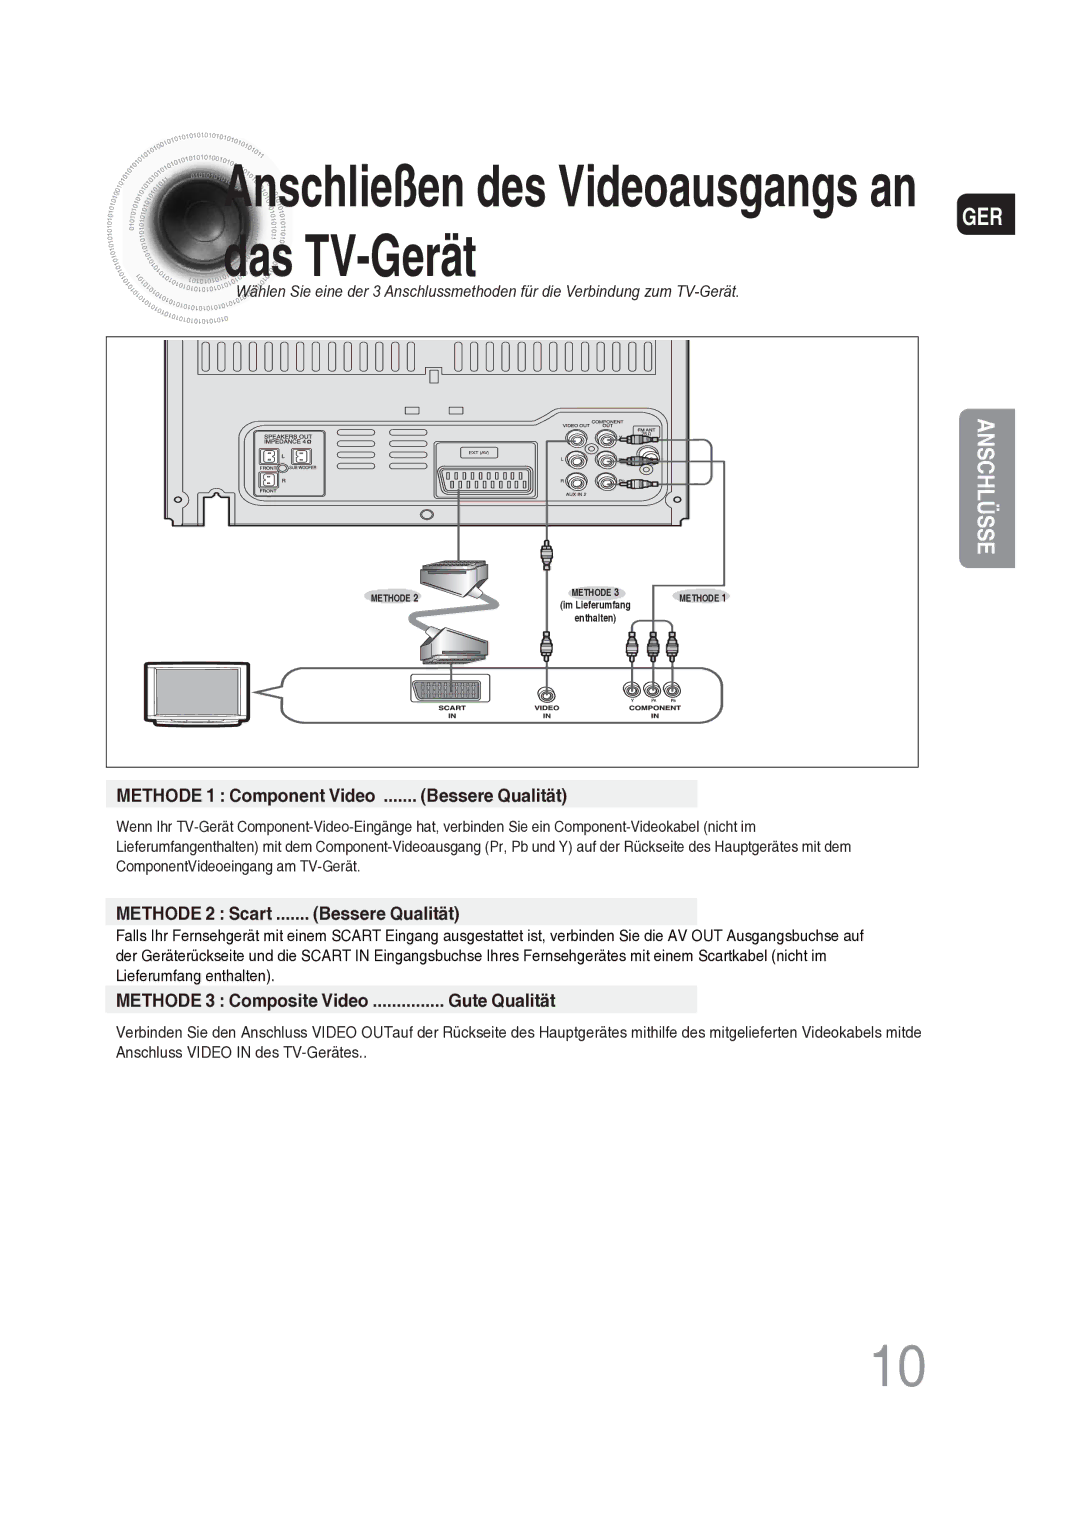 Samsung MAX-DG56R/EDC manual Das TV-Gerät, Methode 1 Component Video Bessere Qualität, Methode 2 Scart Bessere Qualität 